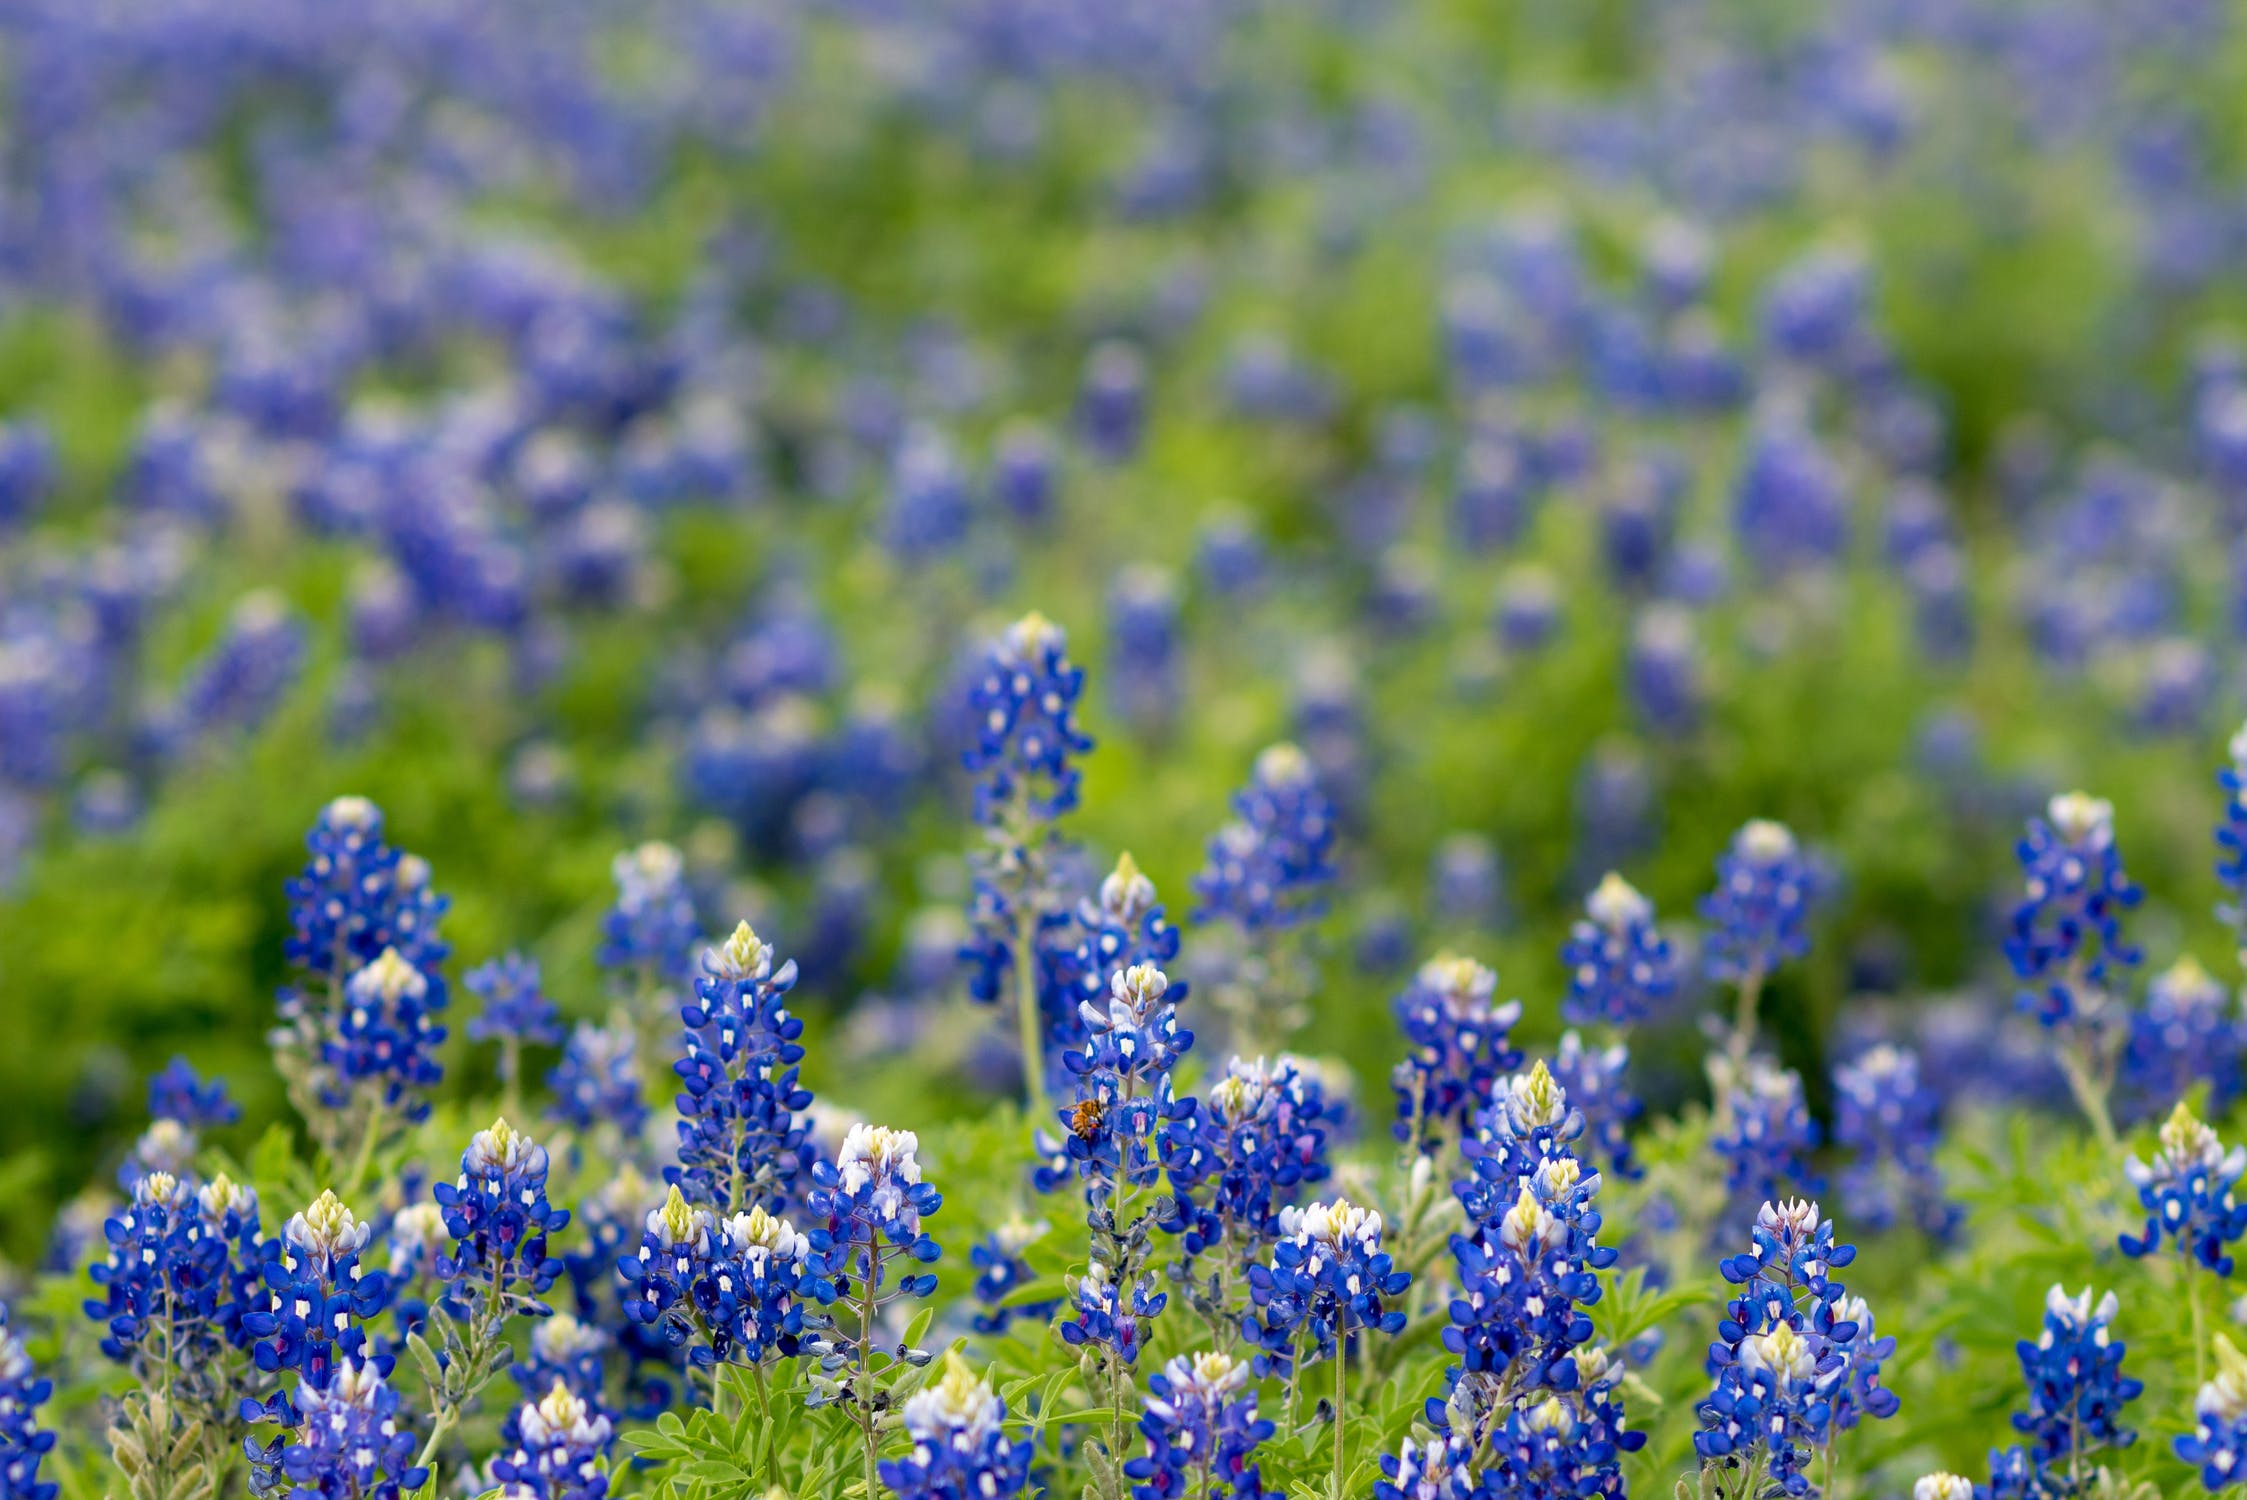 Blue Bonnets near Odessa, TX